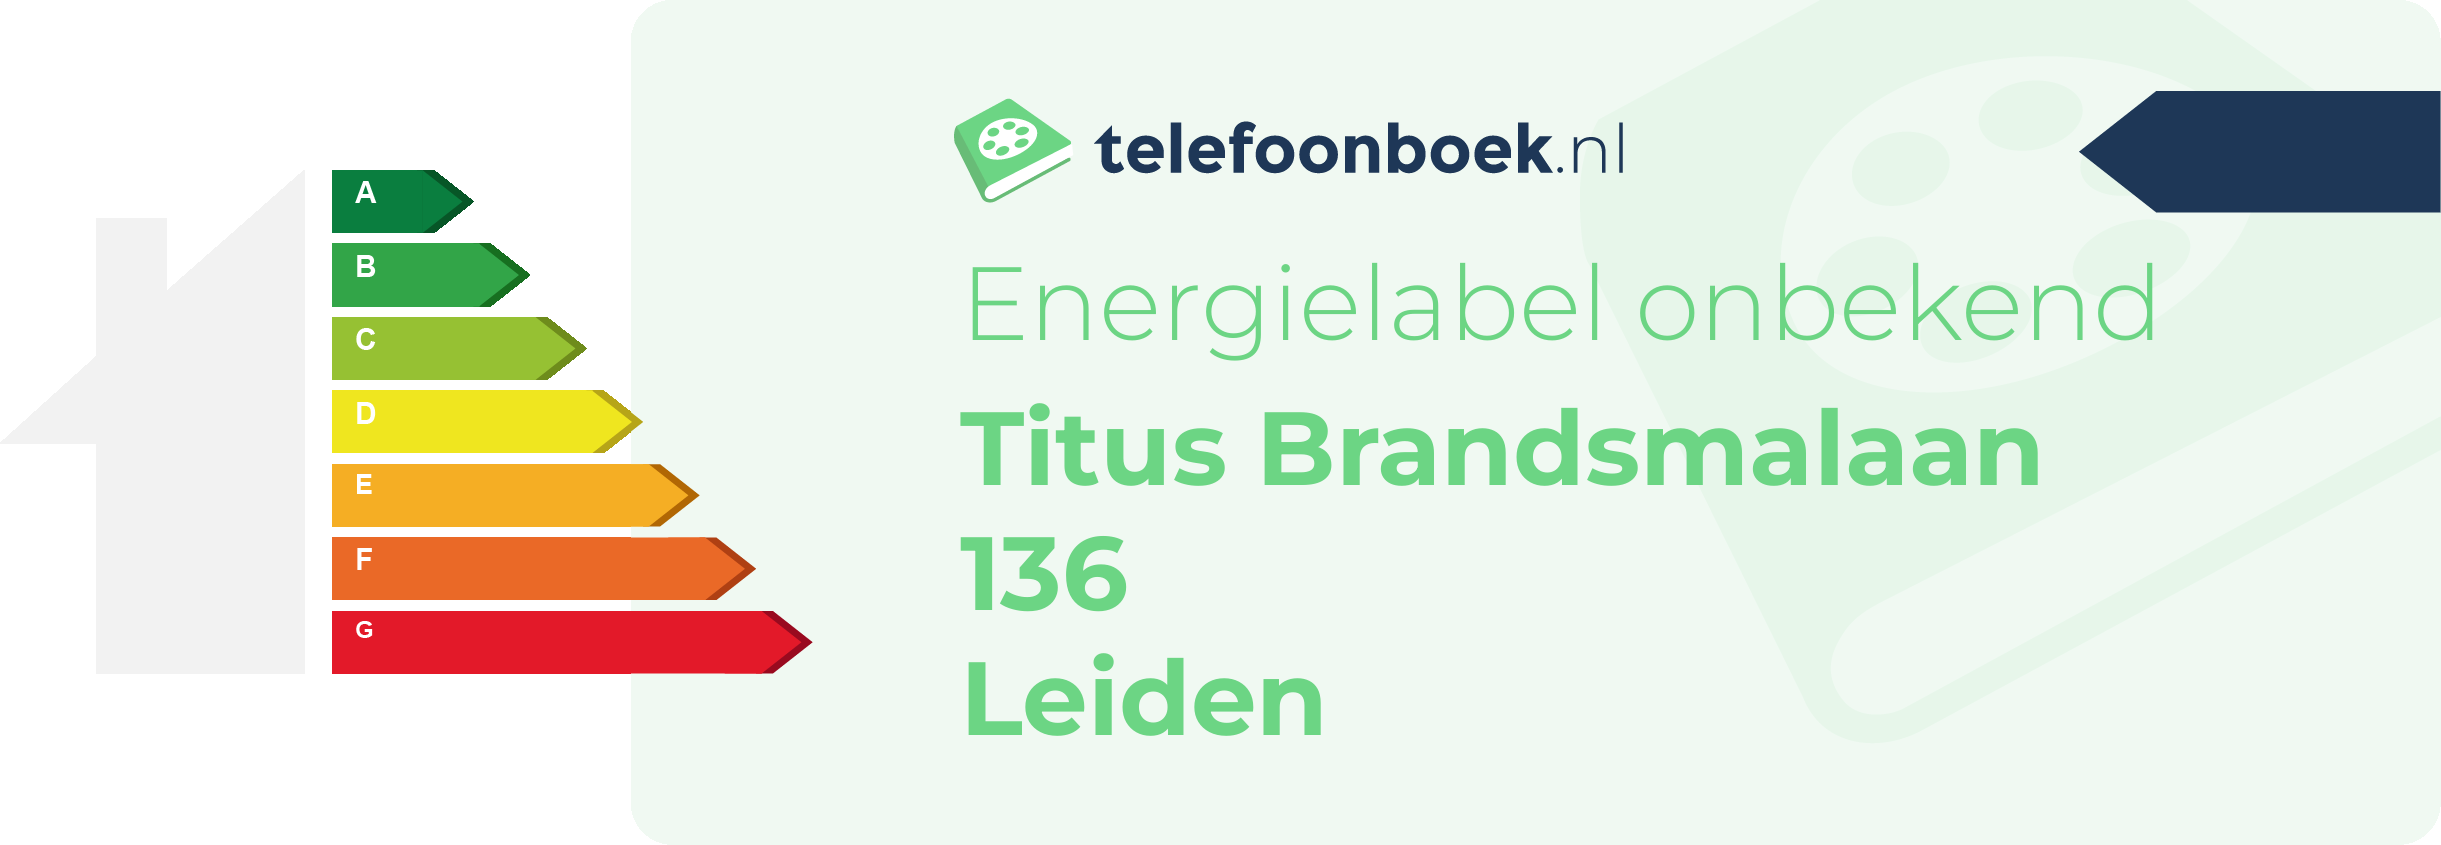 Energielabel Titus Brandsmalaan 136 Leiden